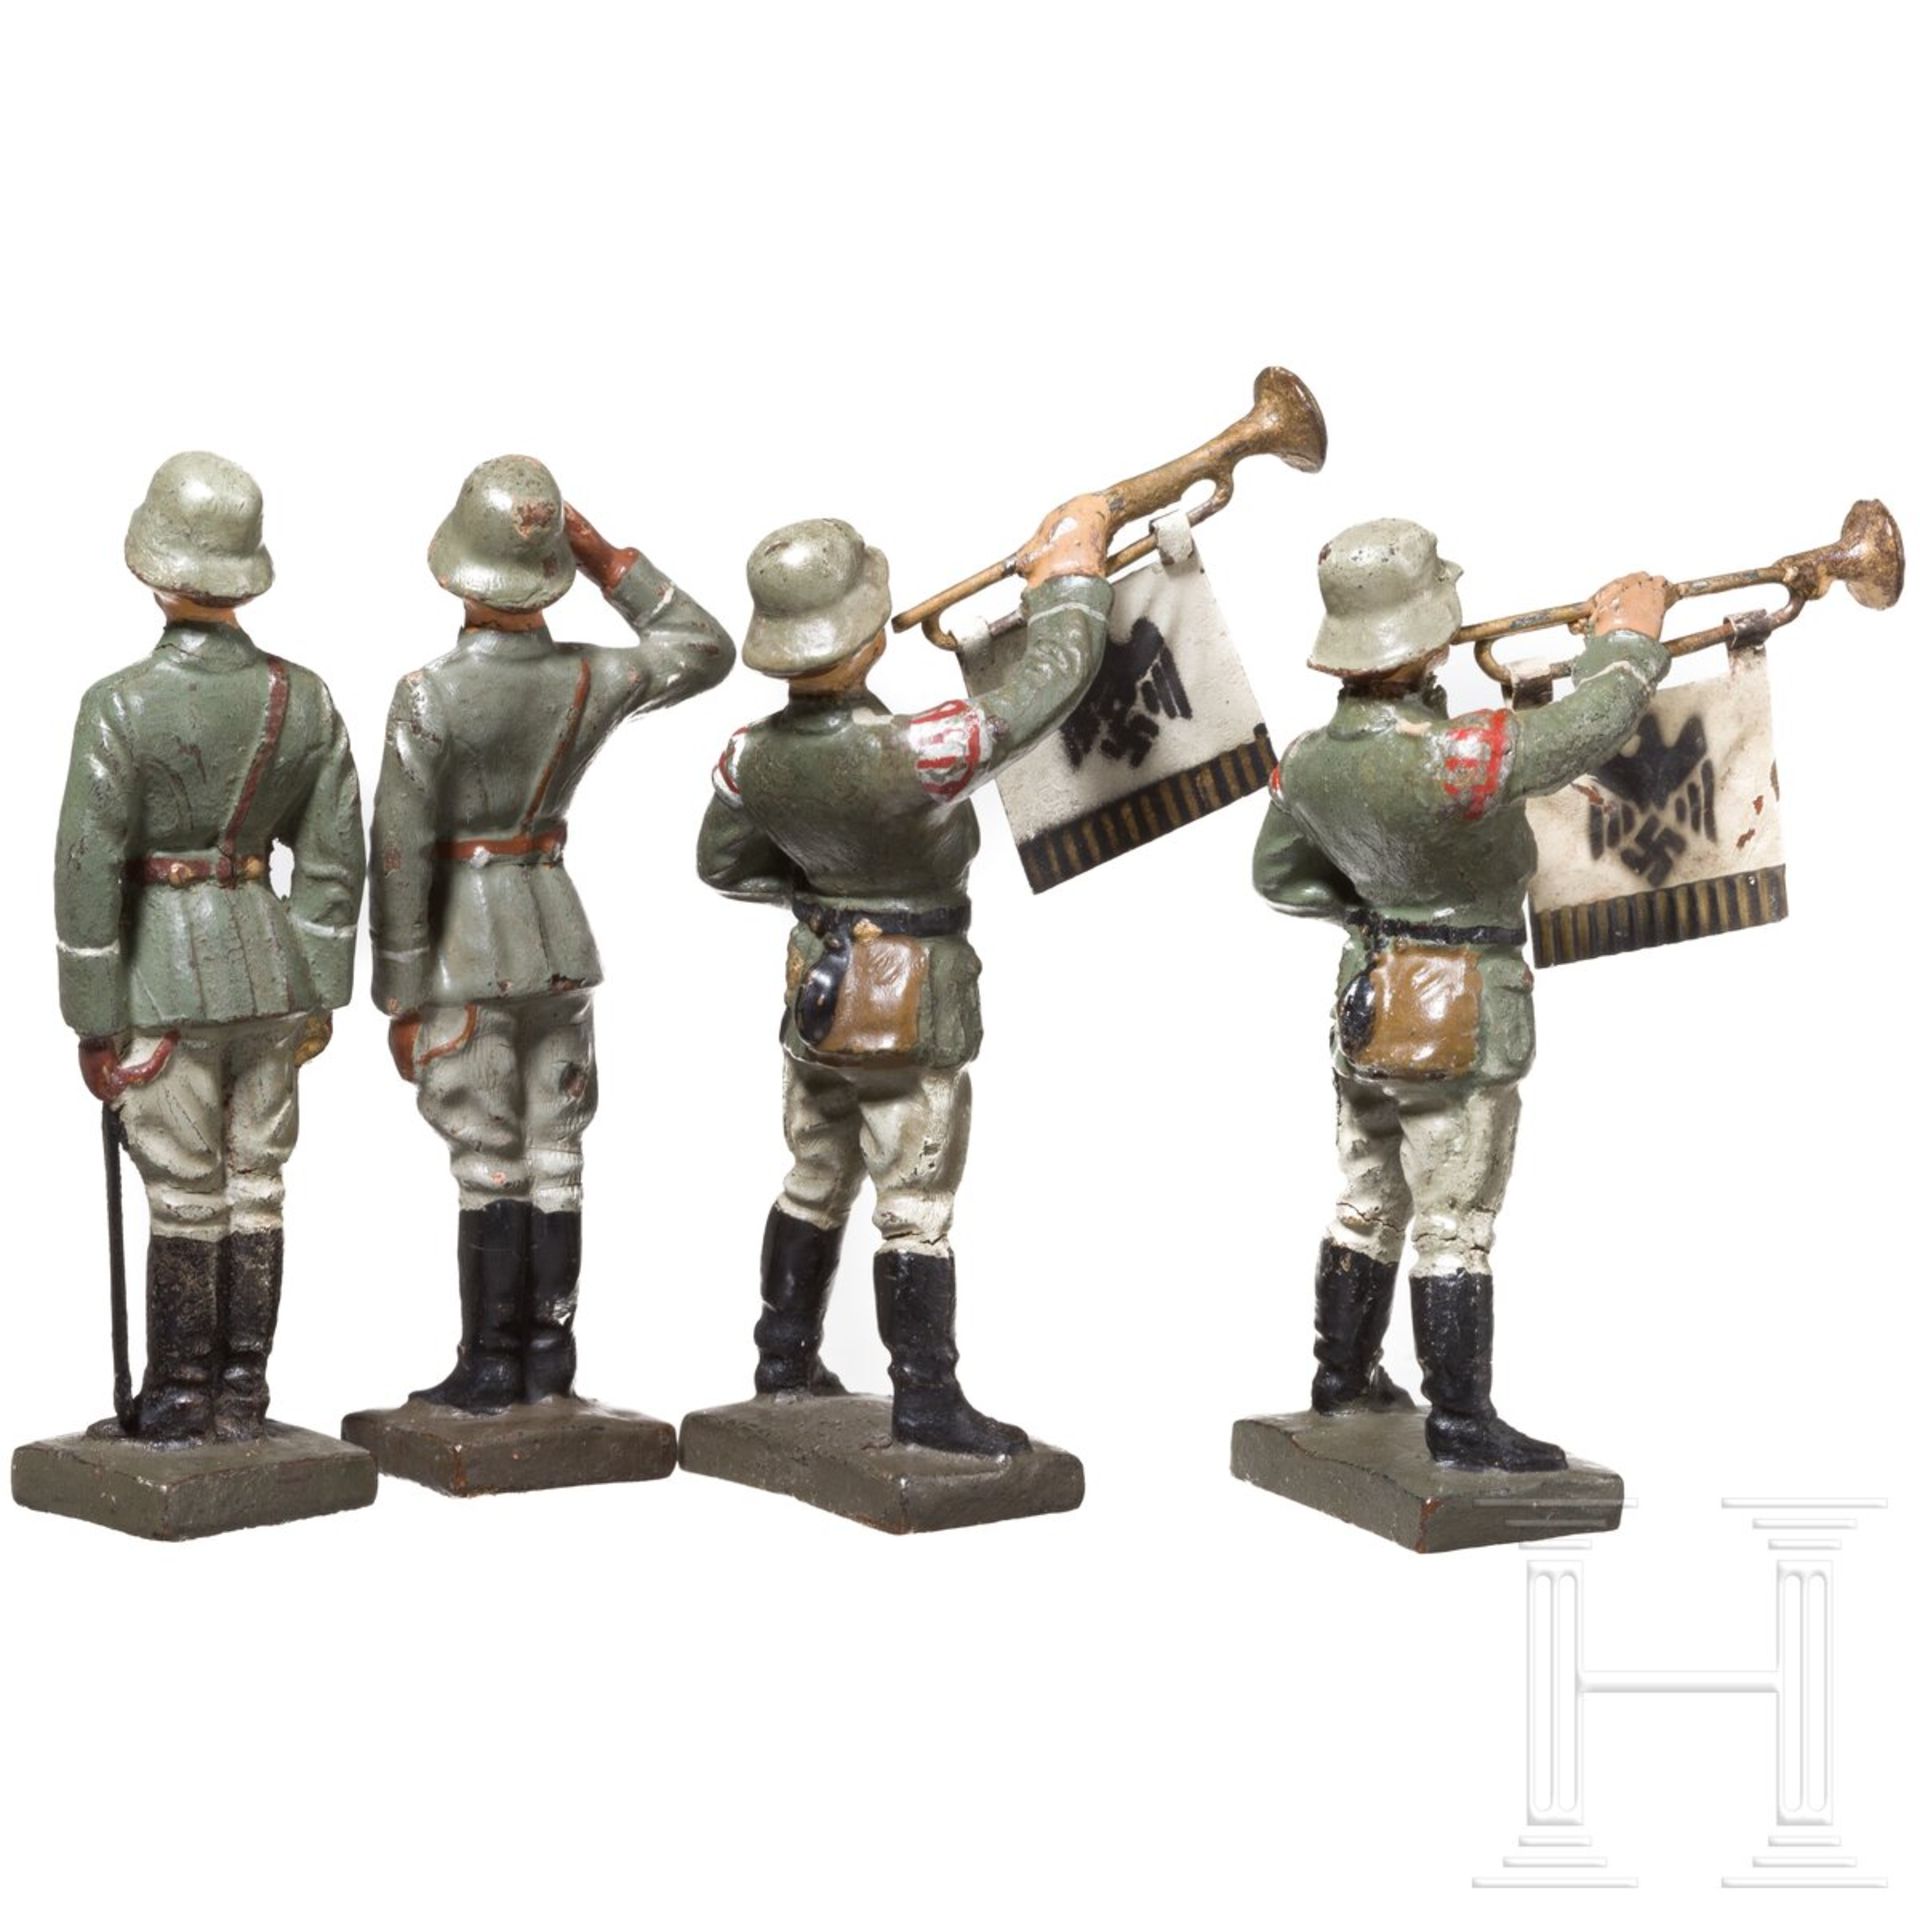 Vier stillgestandene Lineol Soldaten des Heeres mit Fanfarenbläsern - Bild 2 aus 3